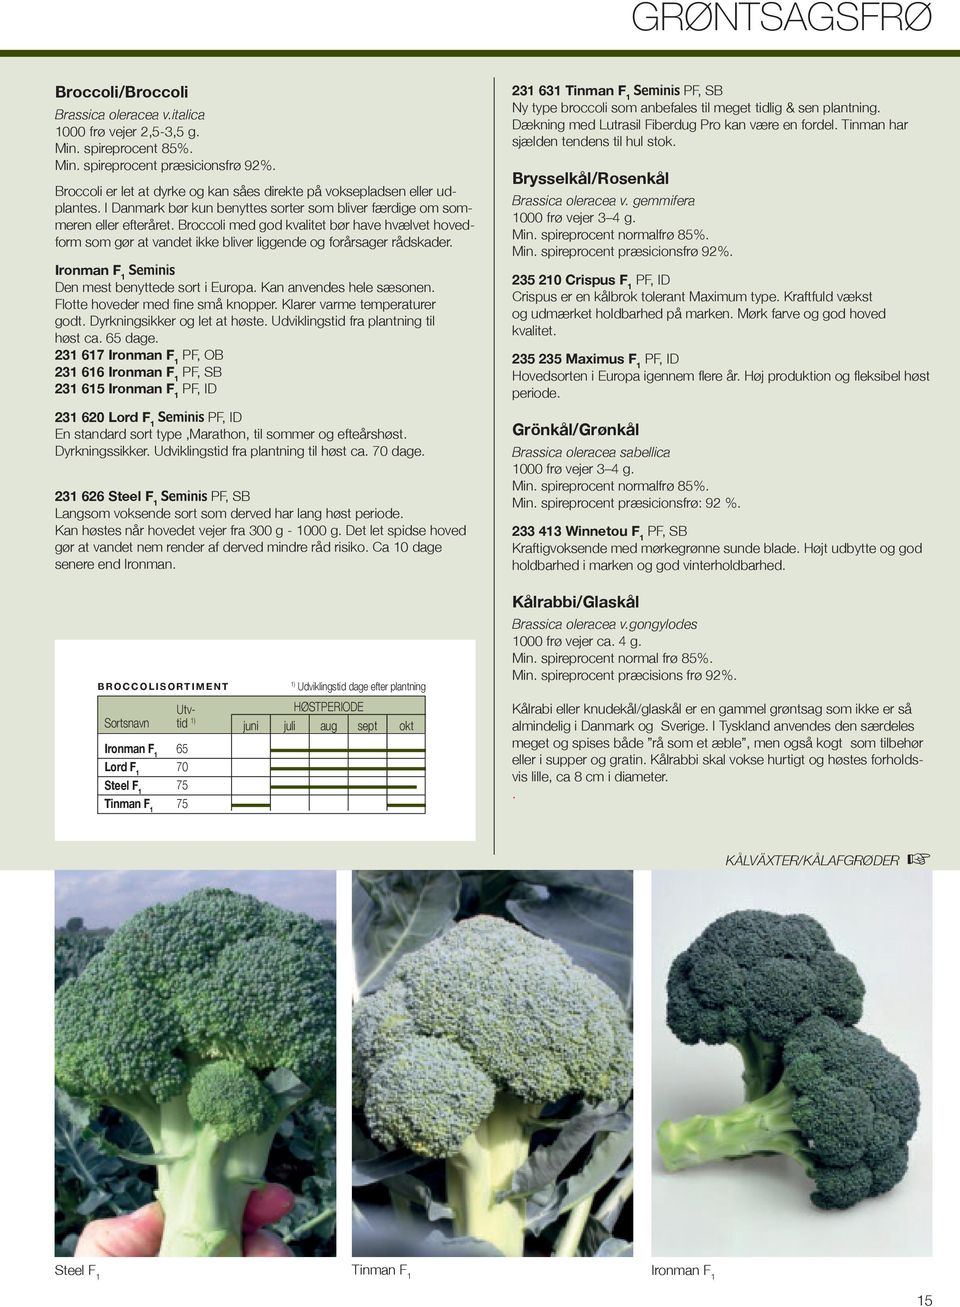 Broccoli med god kvalitet bør have hvælvet hovedform som gør at vandet ikke bliver liggende og forårsager rådskader. Ironman F 1 Den mest benyttede sort i Europa. Kan anvendes hele sæsonen.